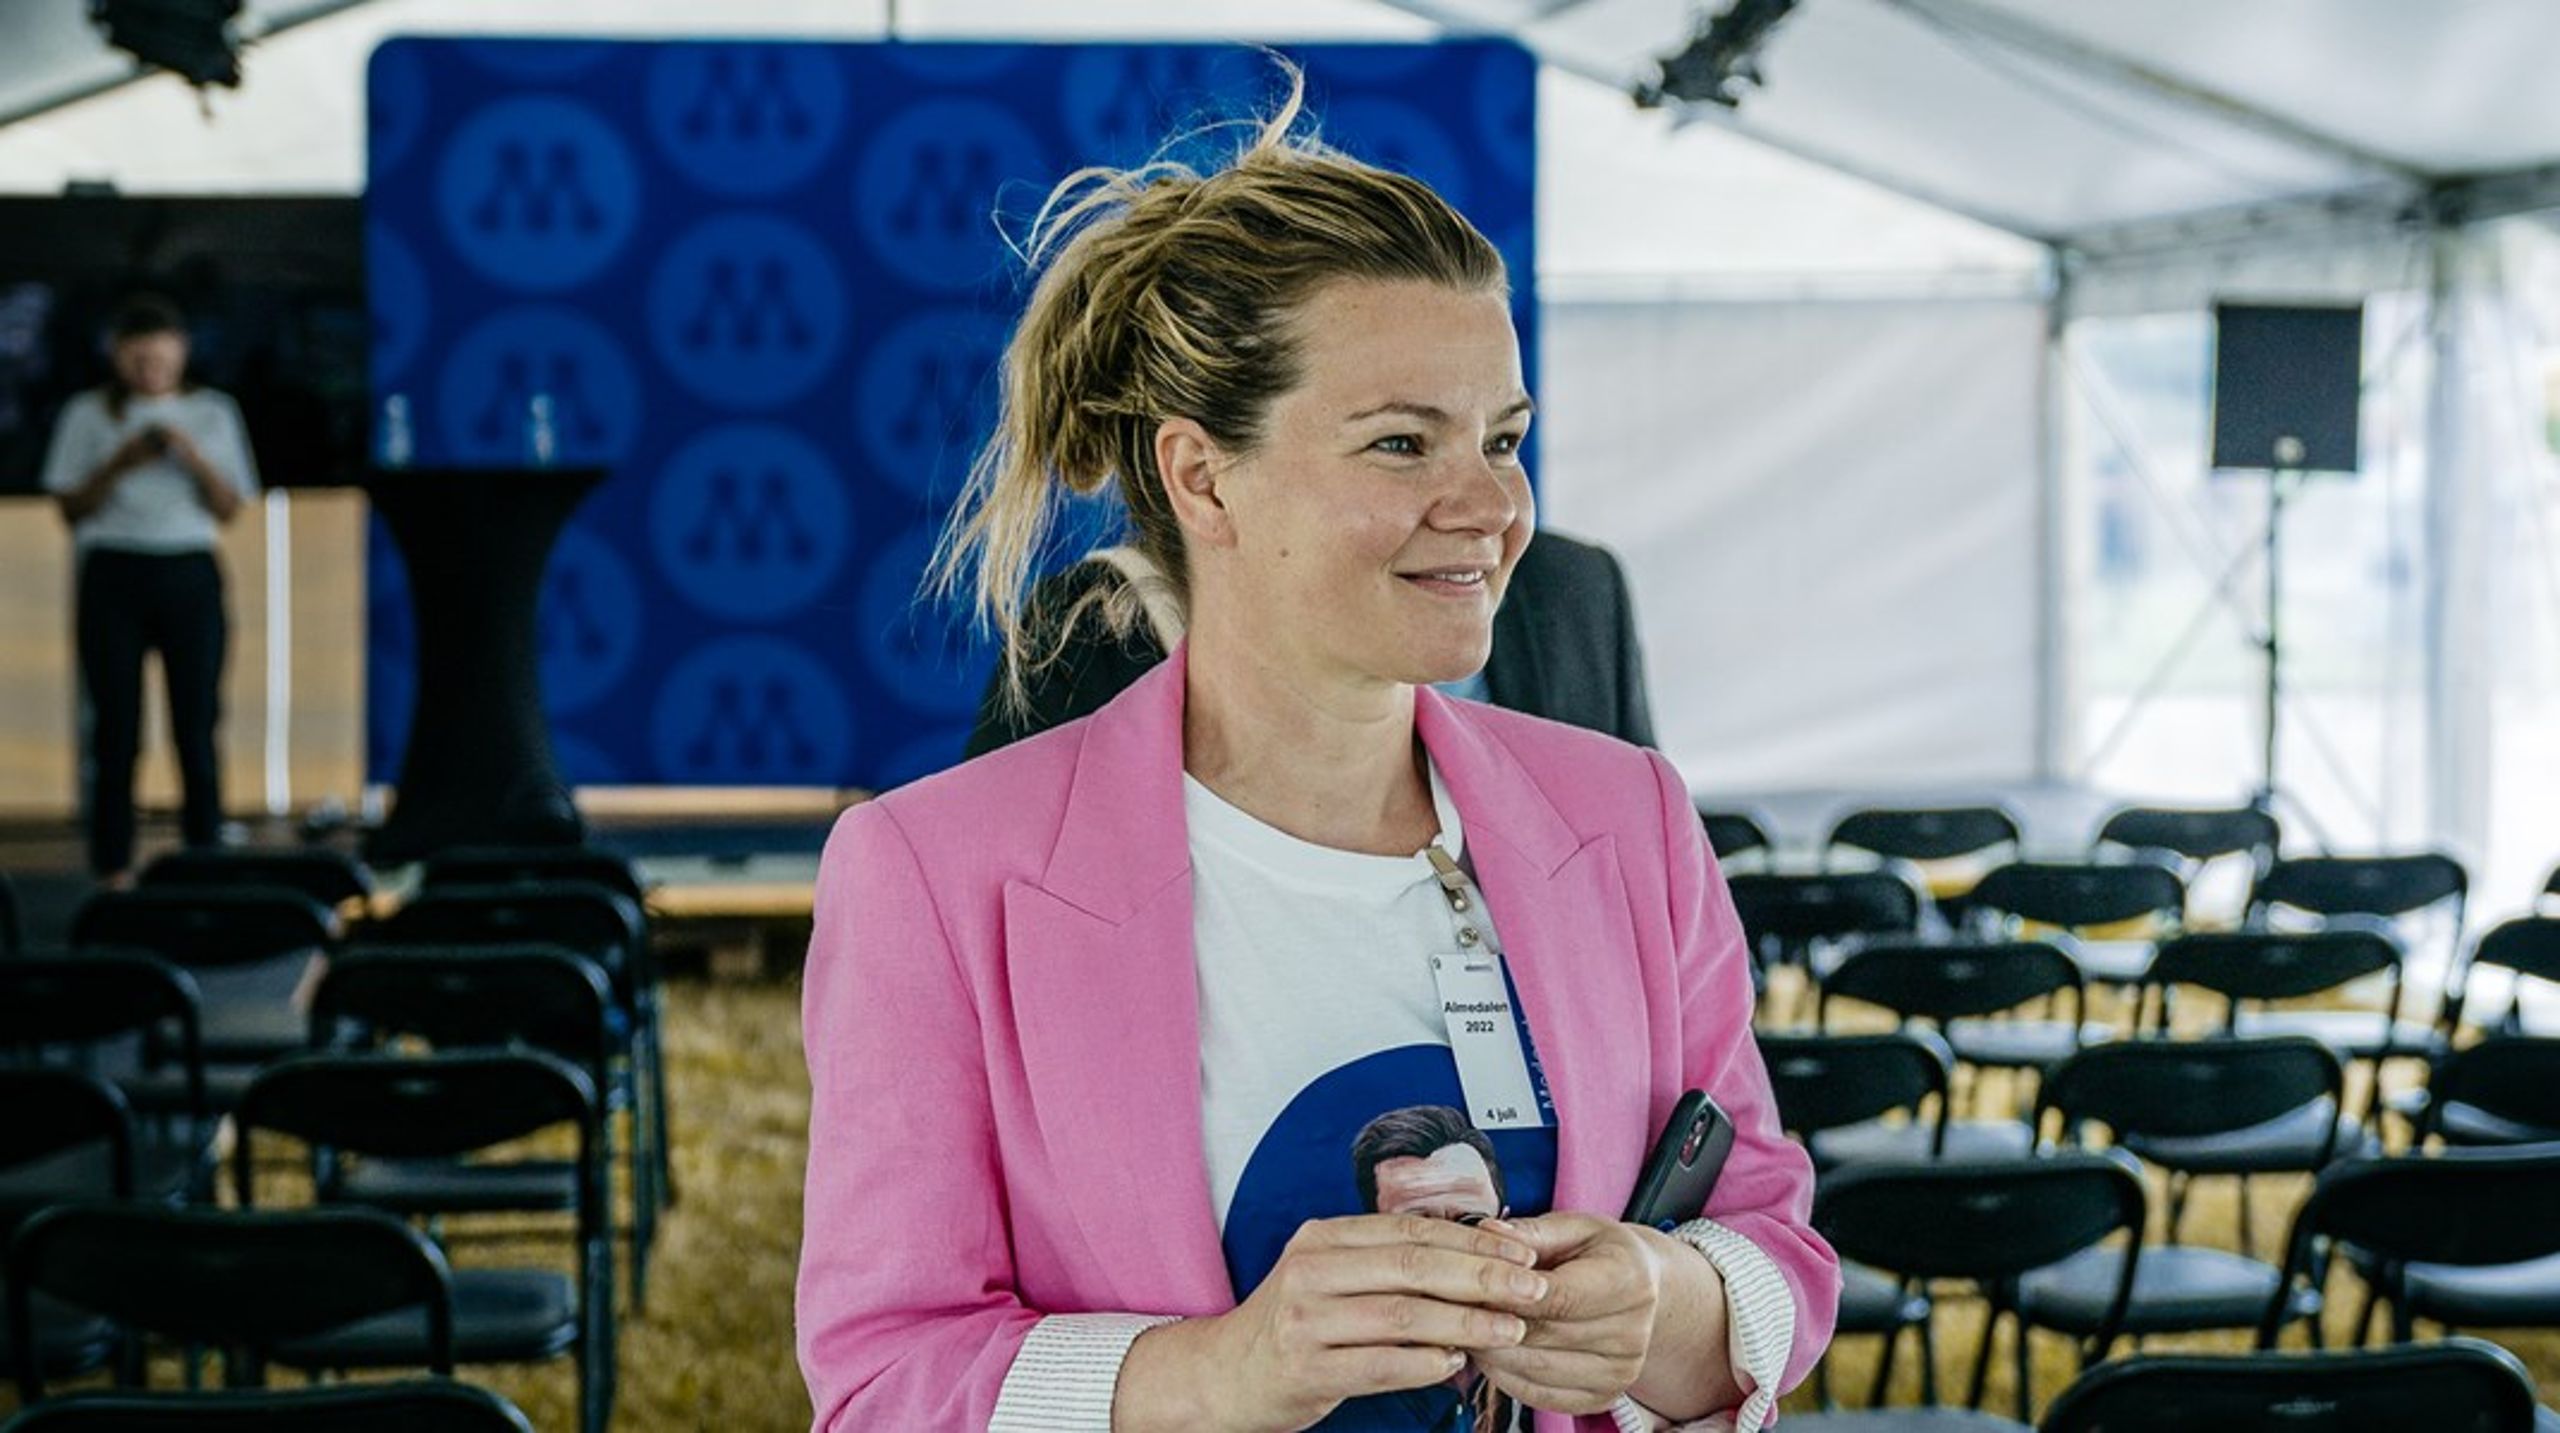 Favorit i repris.&nbsp;Karin Juhlin var Moderaternas valledare även i EU-valet 2019.&nbsp;Hon har tidigare varit organisationschef för Moderaterna, stabschef för Moderaternas partiledning samt varit politiskt sakkunnig på arbetsmarknadsdepartementet.